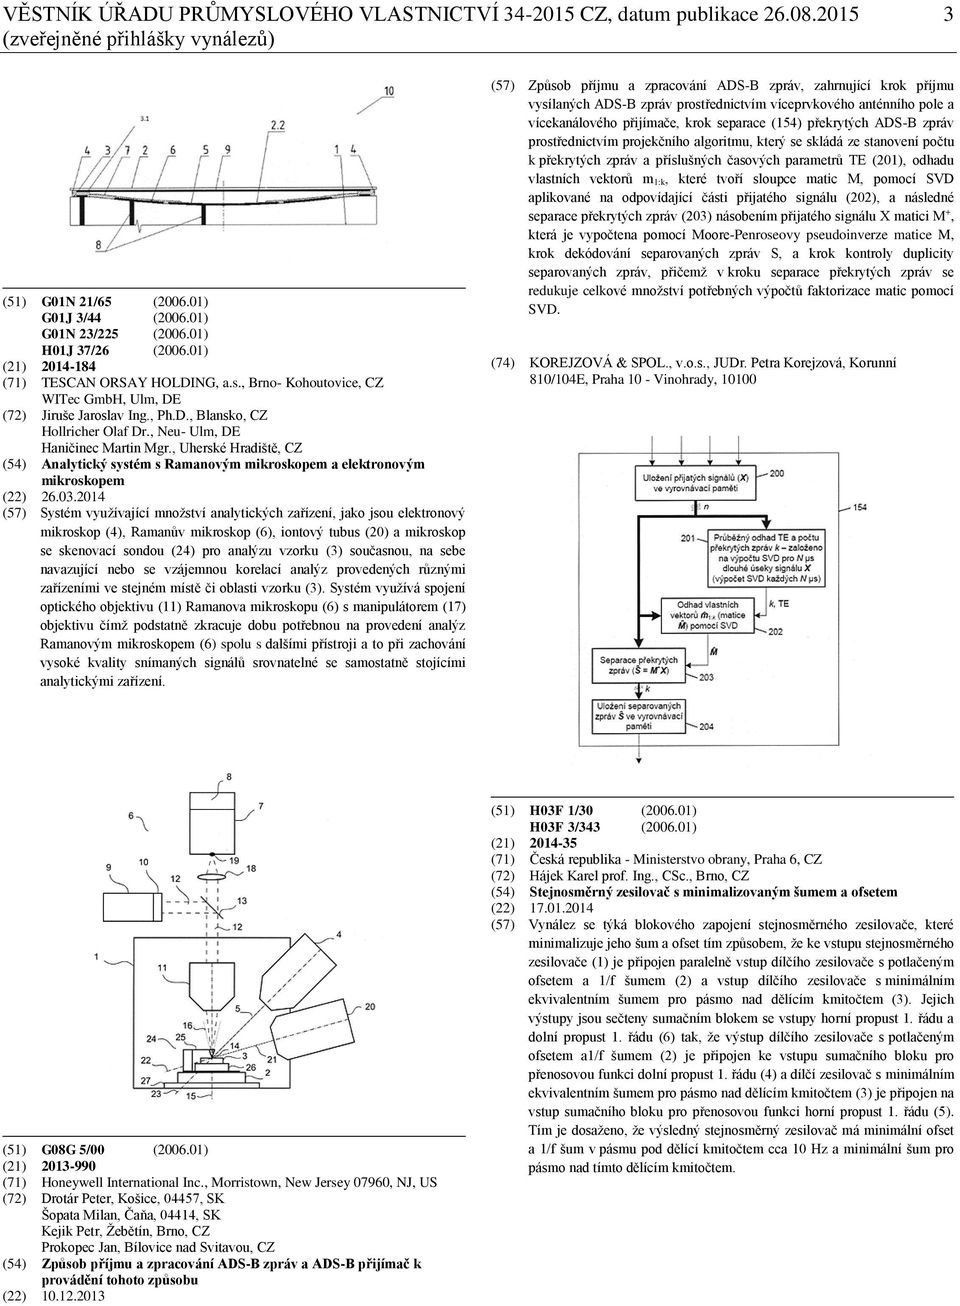 , Uherské Hradiště, CZ (54) Analytický systém s Ramanovým mikroskopem a elektronovým mikroskopem (22) 26.03.